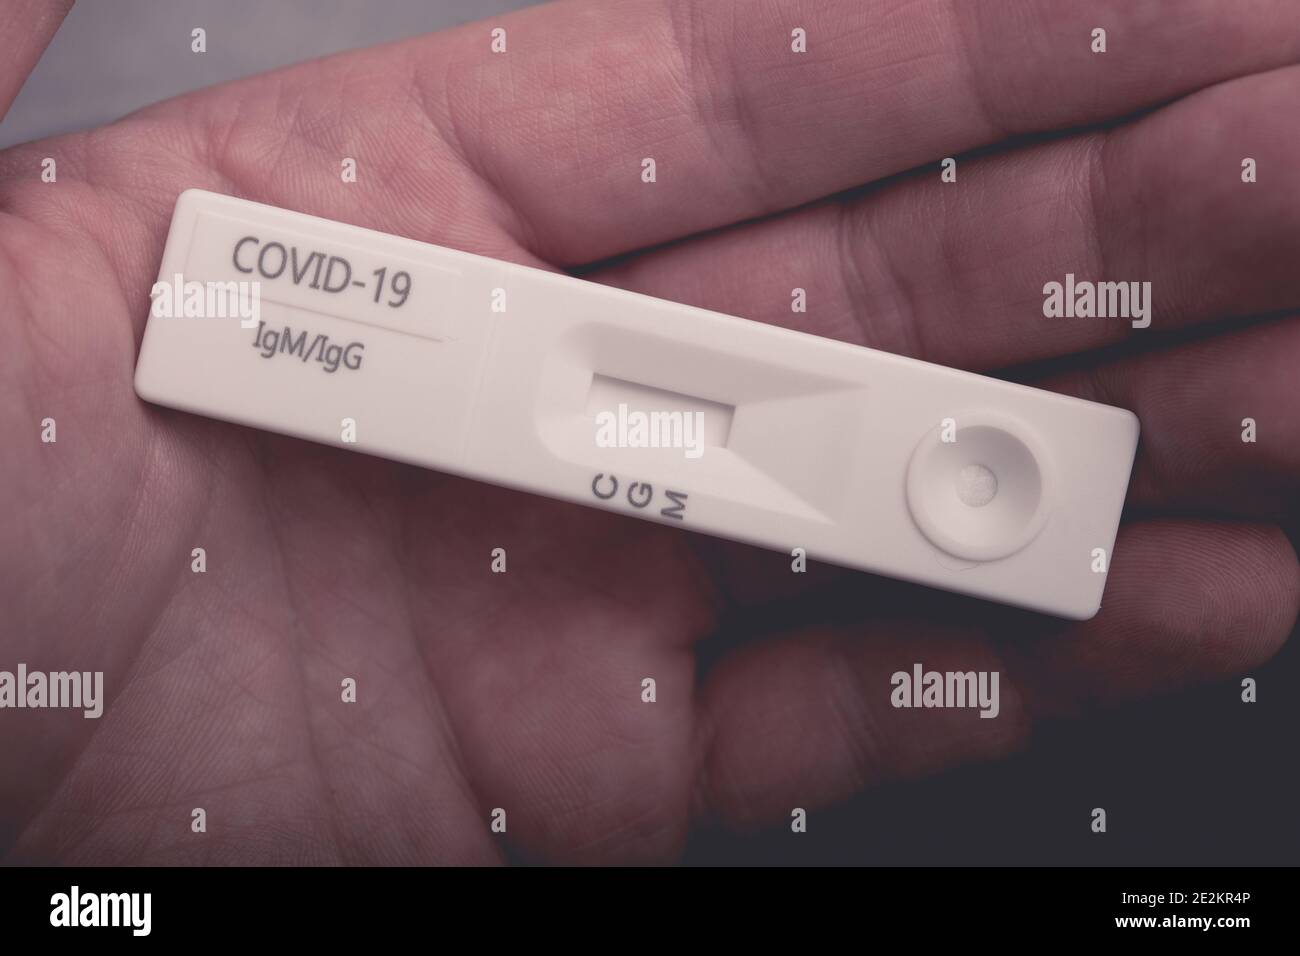 Classic COVID-19 IgG IgM Schnelltestkassette auf kaukasischer Männerhand. Coronavirus Pandemie Thema. Gesundheitswesen. Stockfoto